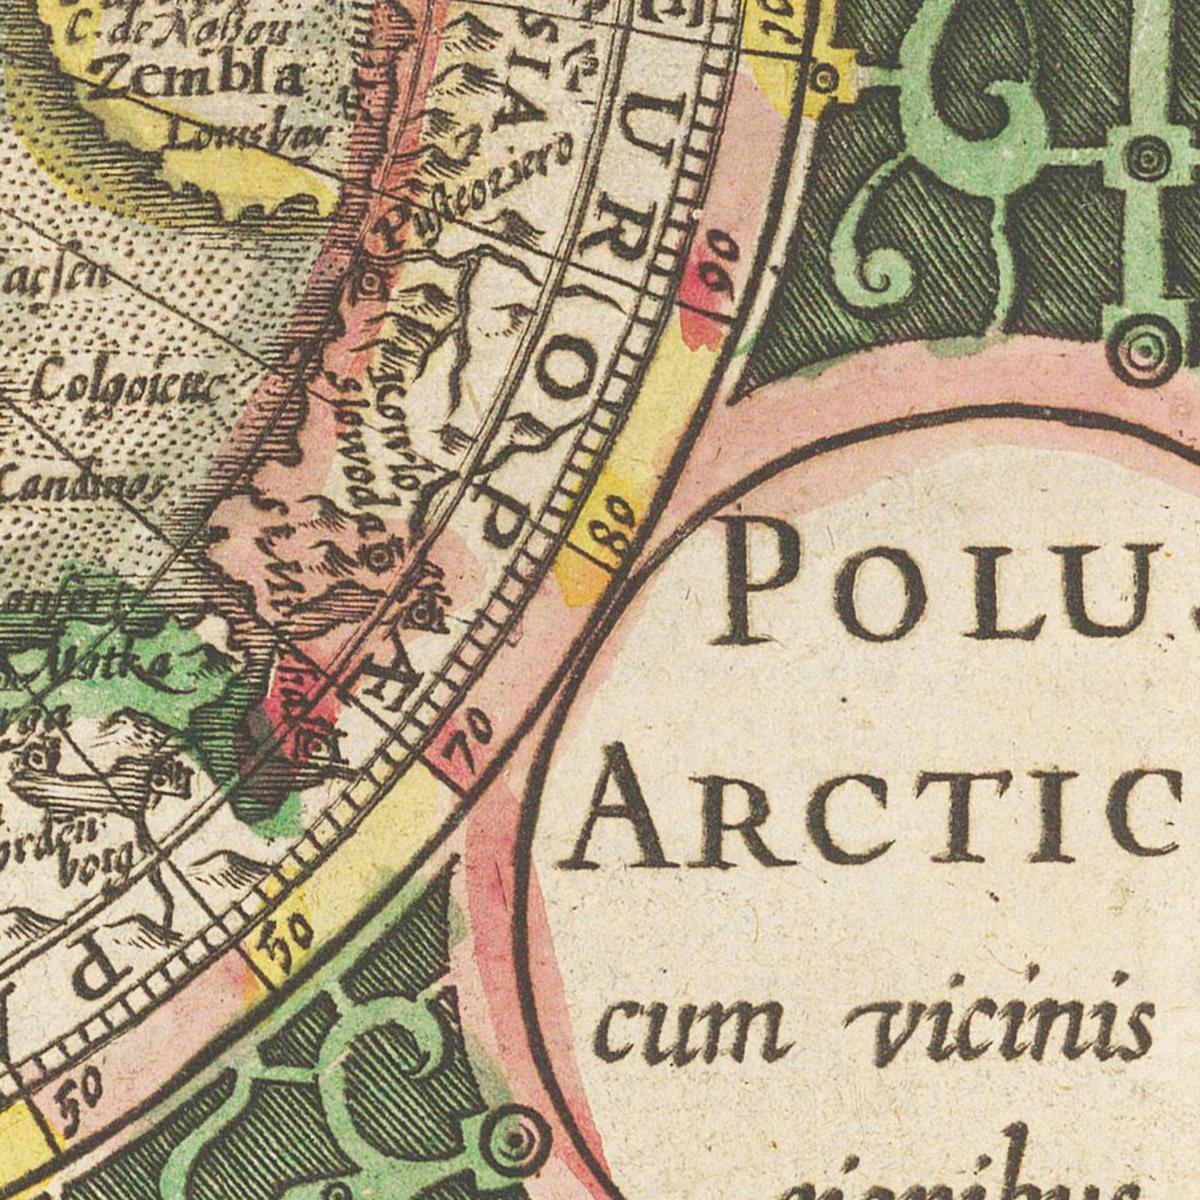 Historische Landkarte Arktis um 1609